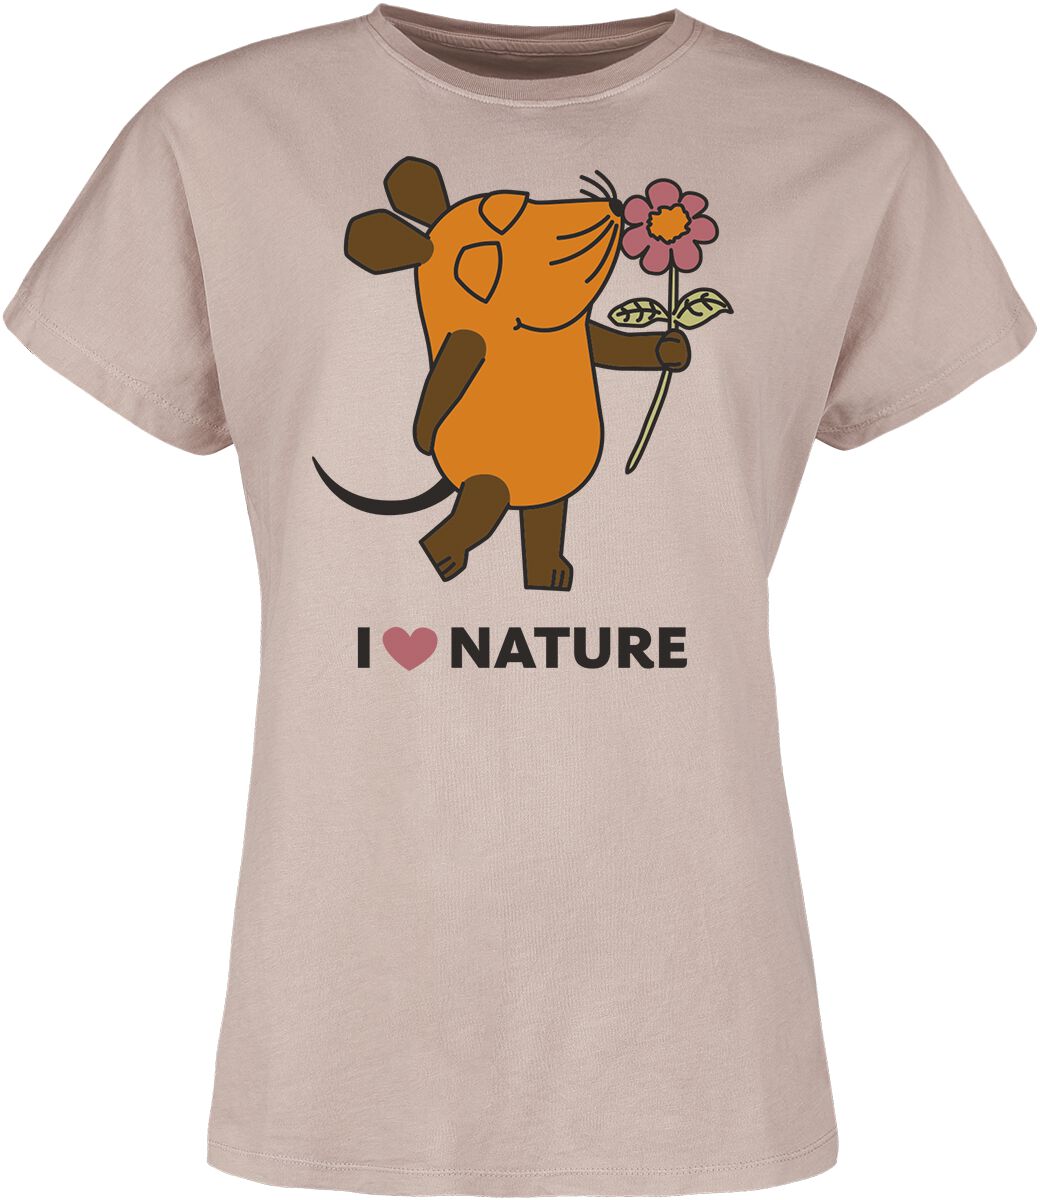 T-Shirt Manches courtes de Die Sendung mit der Maus - I Love Nature - S à 3XL - pour Femme - vieux r